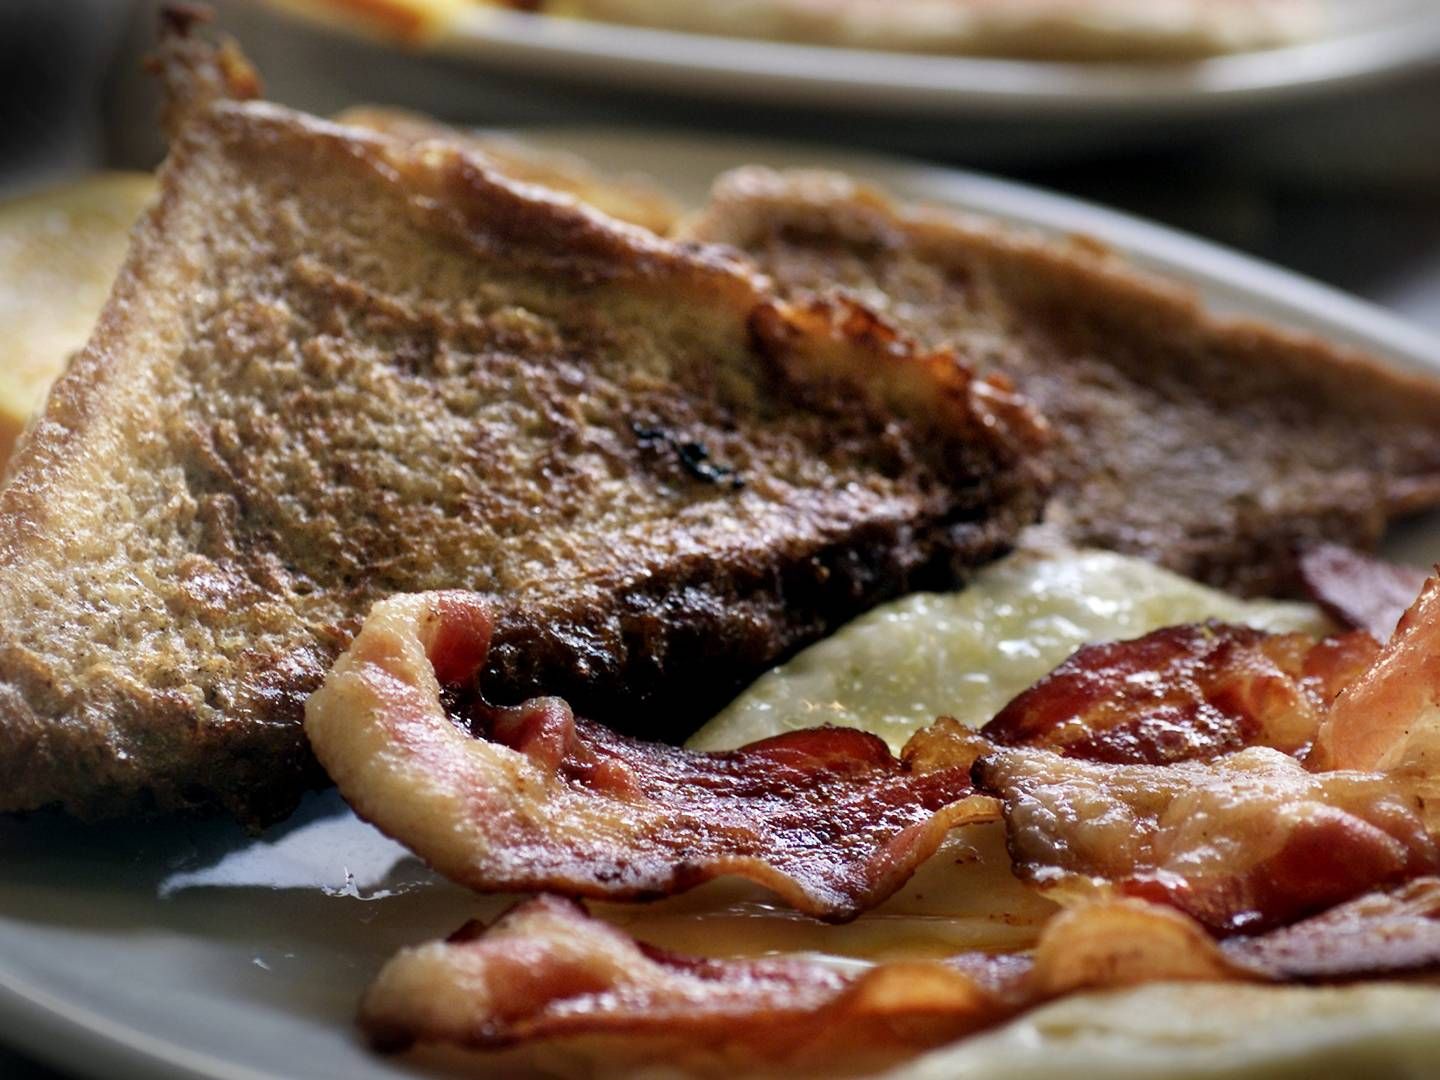 Danish Crown vil kæmpe for, at en traditionel "English breakfast" skal indeholde dansk bacon. | Foto: Kim Nielsen